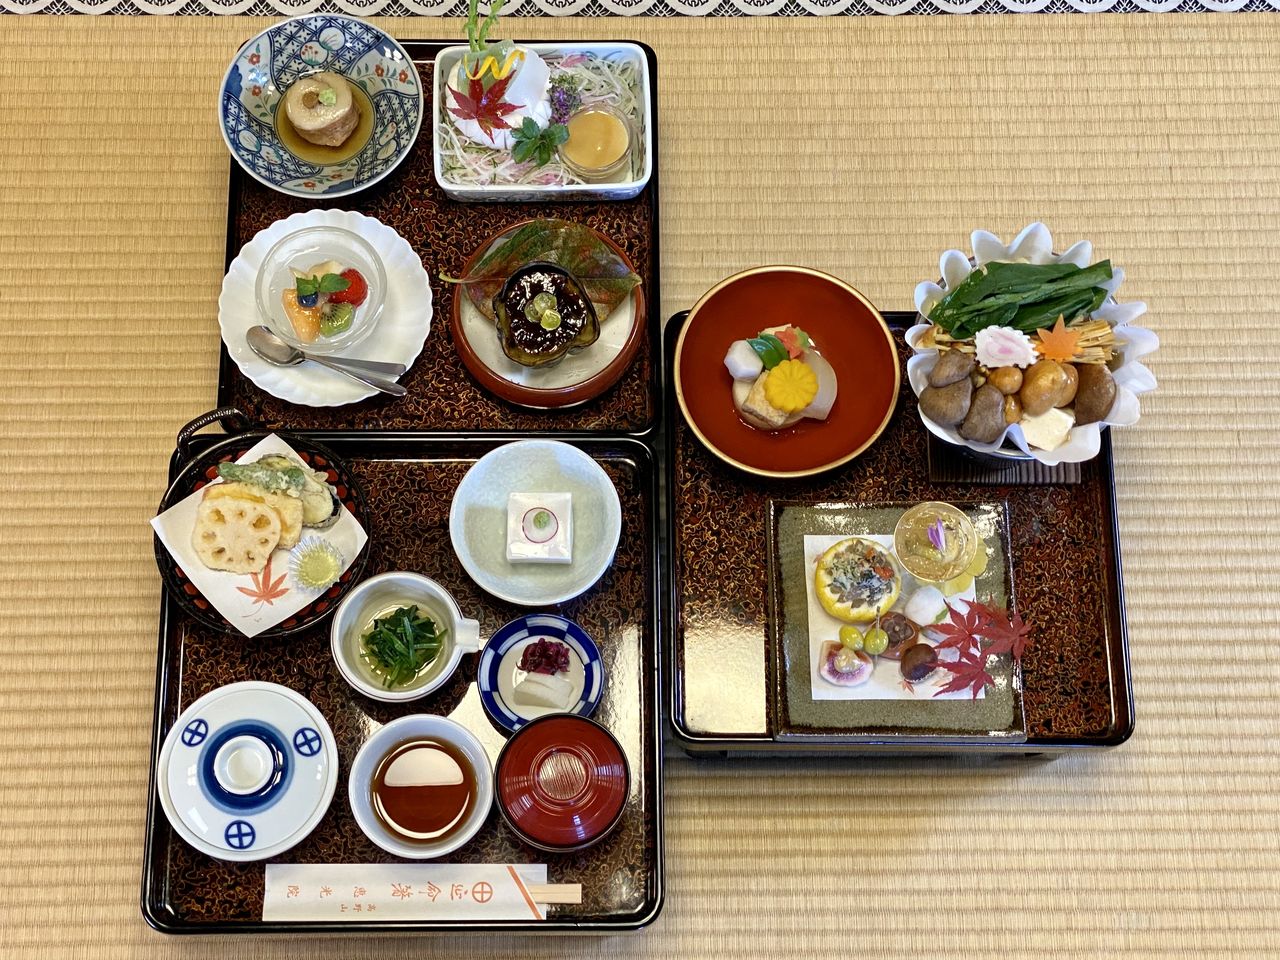 Platos vegetarianos servidos en la cena en el Ekō-in (imagen). También hay planes de lujo con san no zen (una comida japonesa formal que se sirve después del primer y segundo plato, con sopa, sashimi y un plato de arroz) y planes sin gluten. (Fotografía cortesía de Ekō-in)